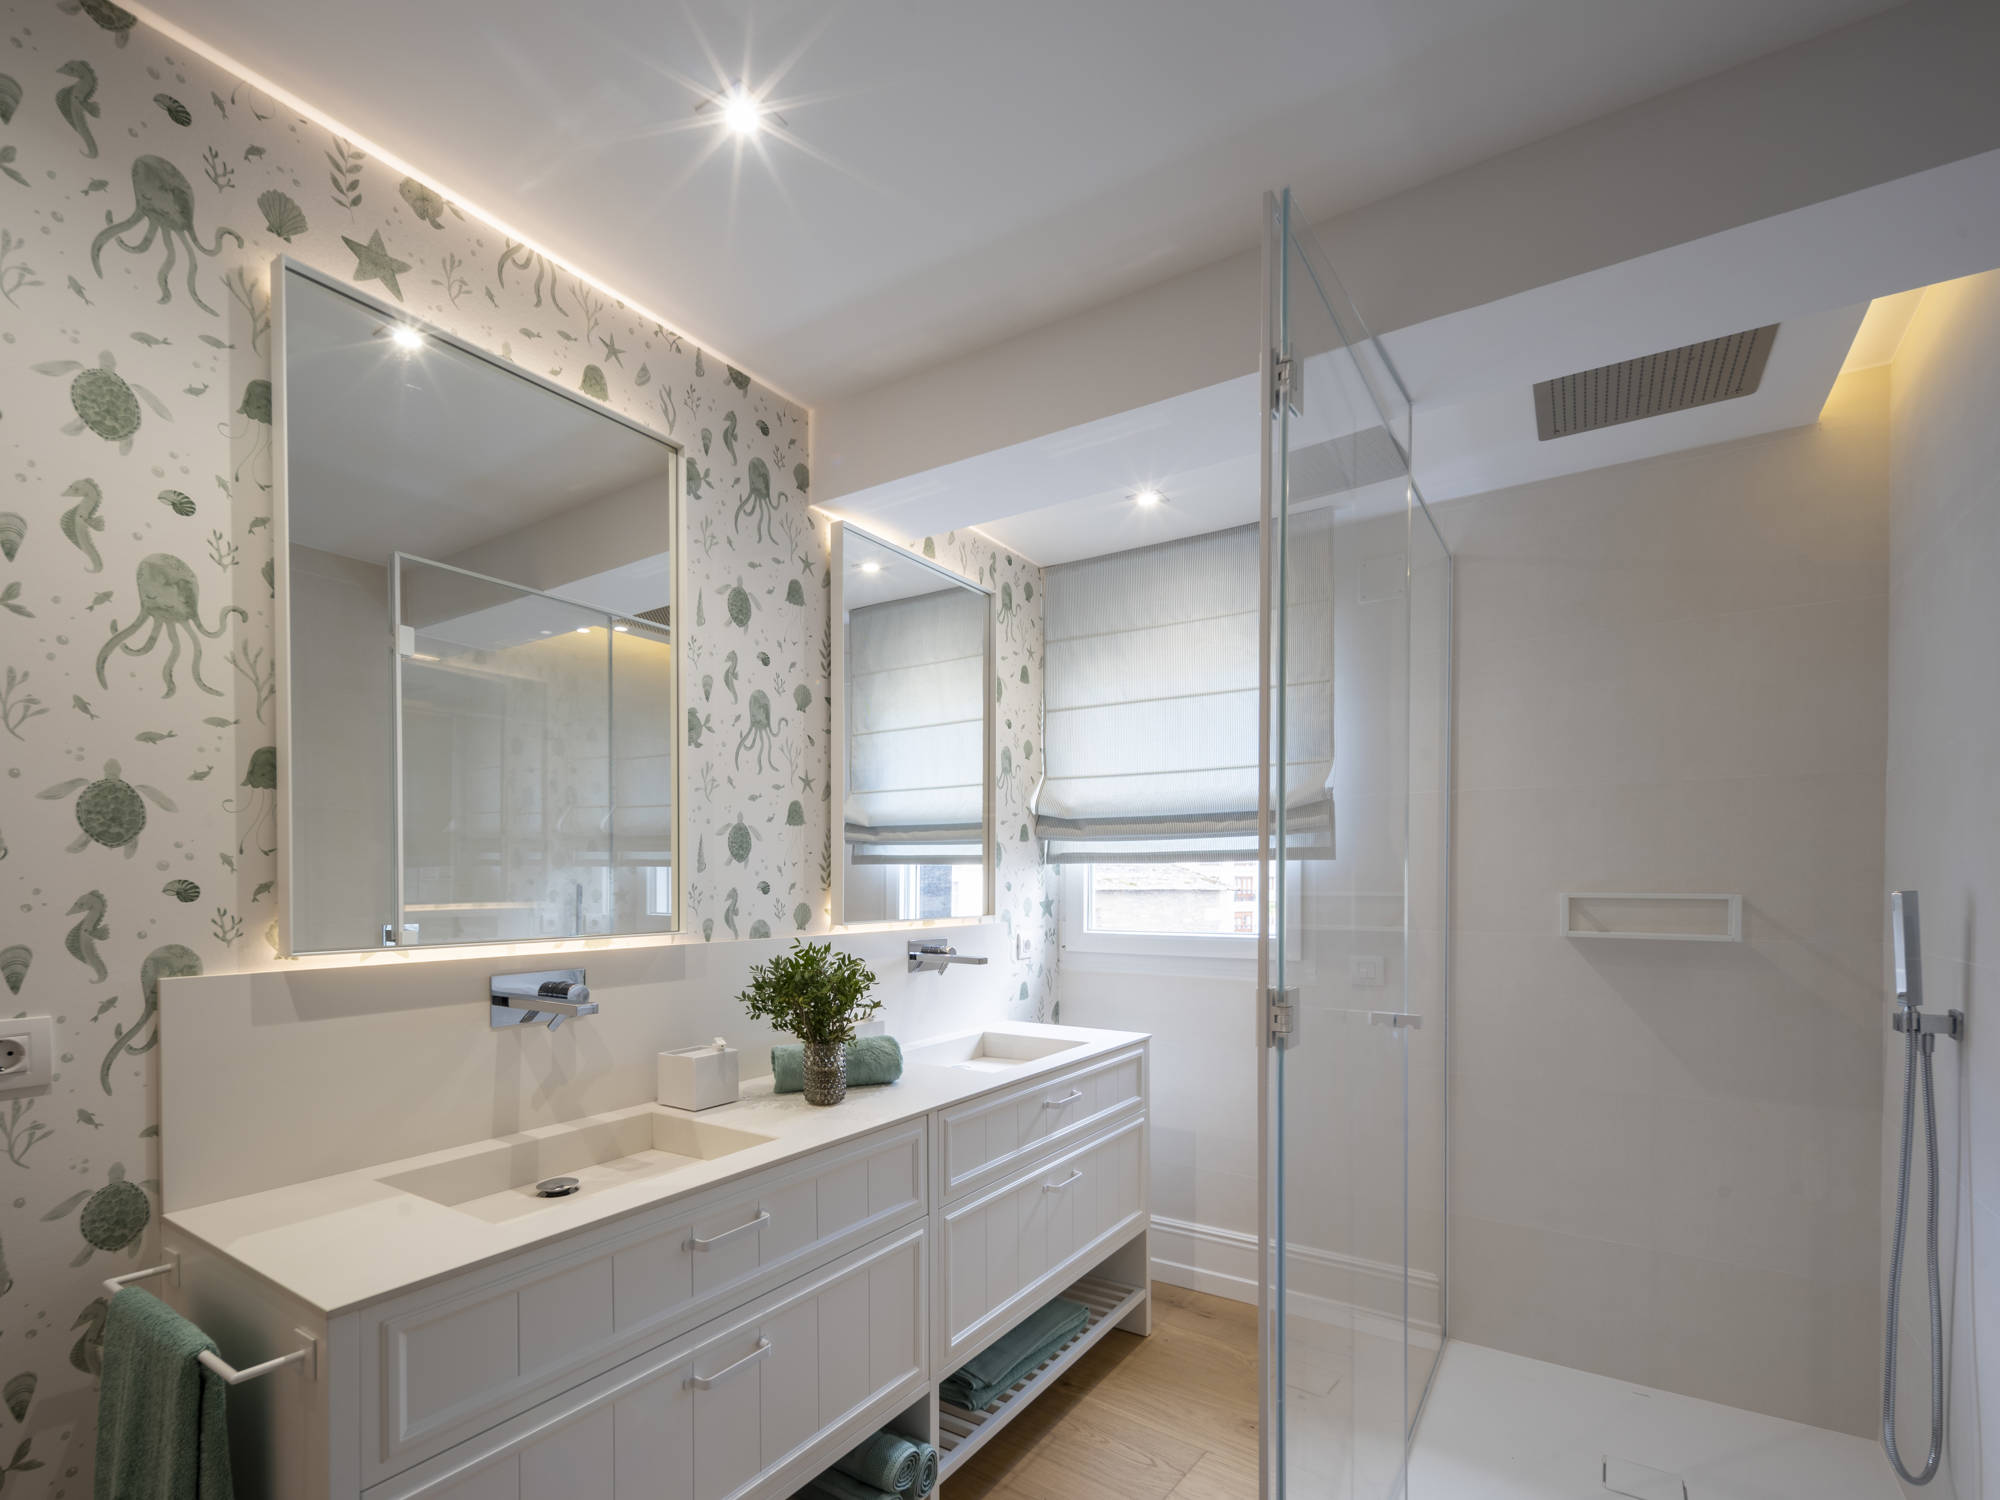 Baño con ducha con mampara de cristal, dos lavamanos y espejos iluminados, y papel pintado de temática marina.